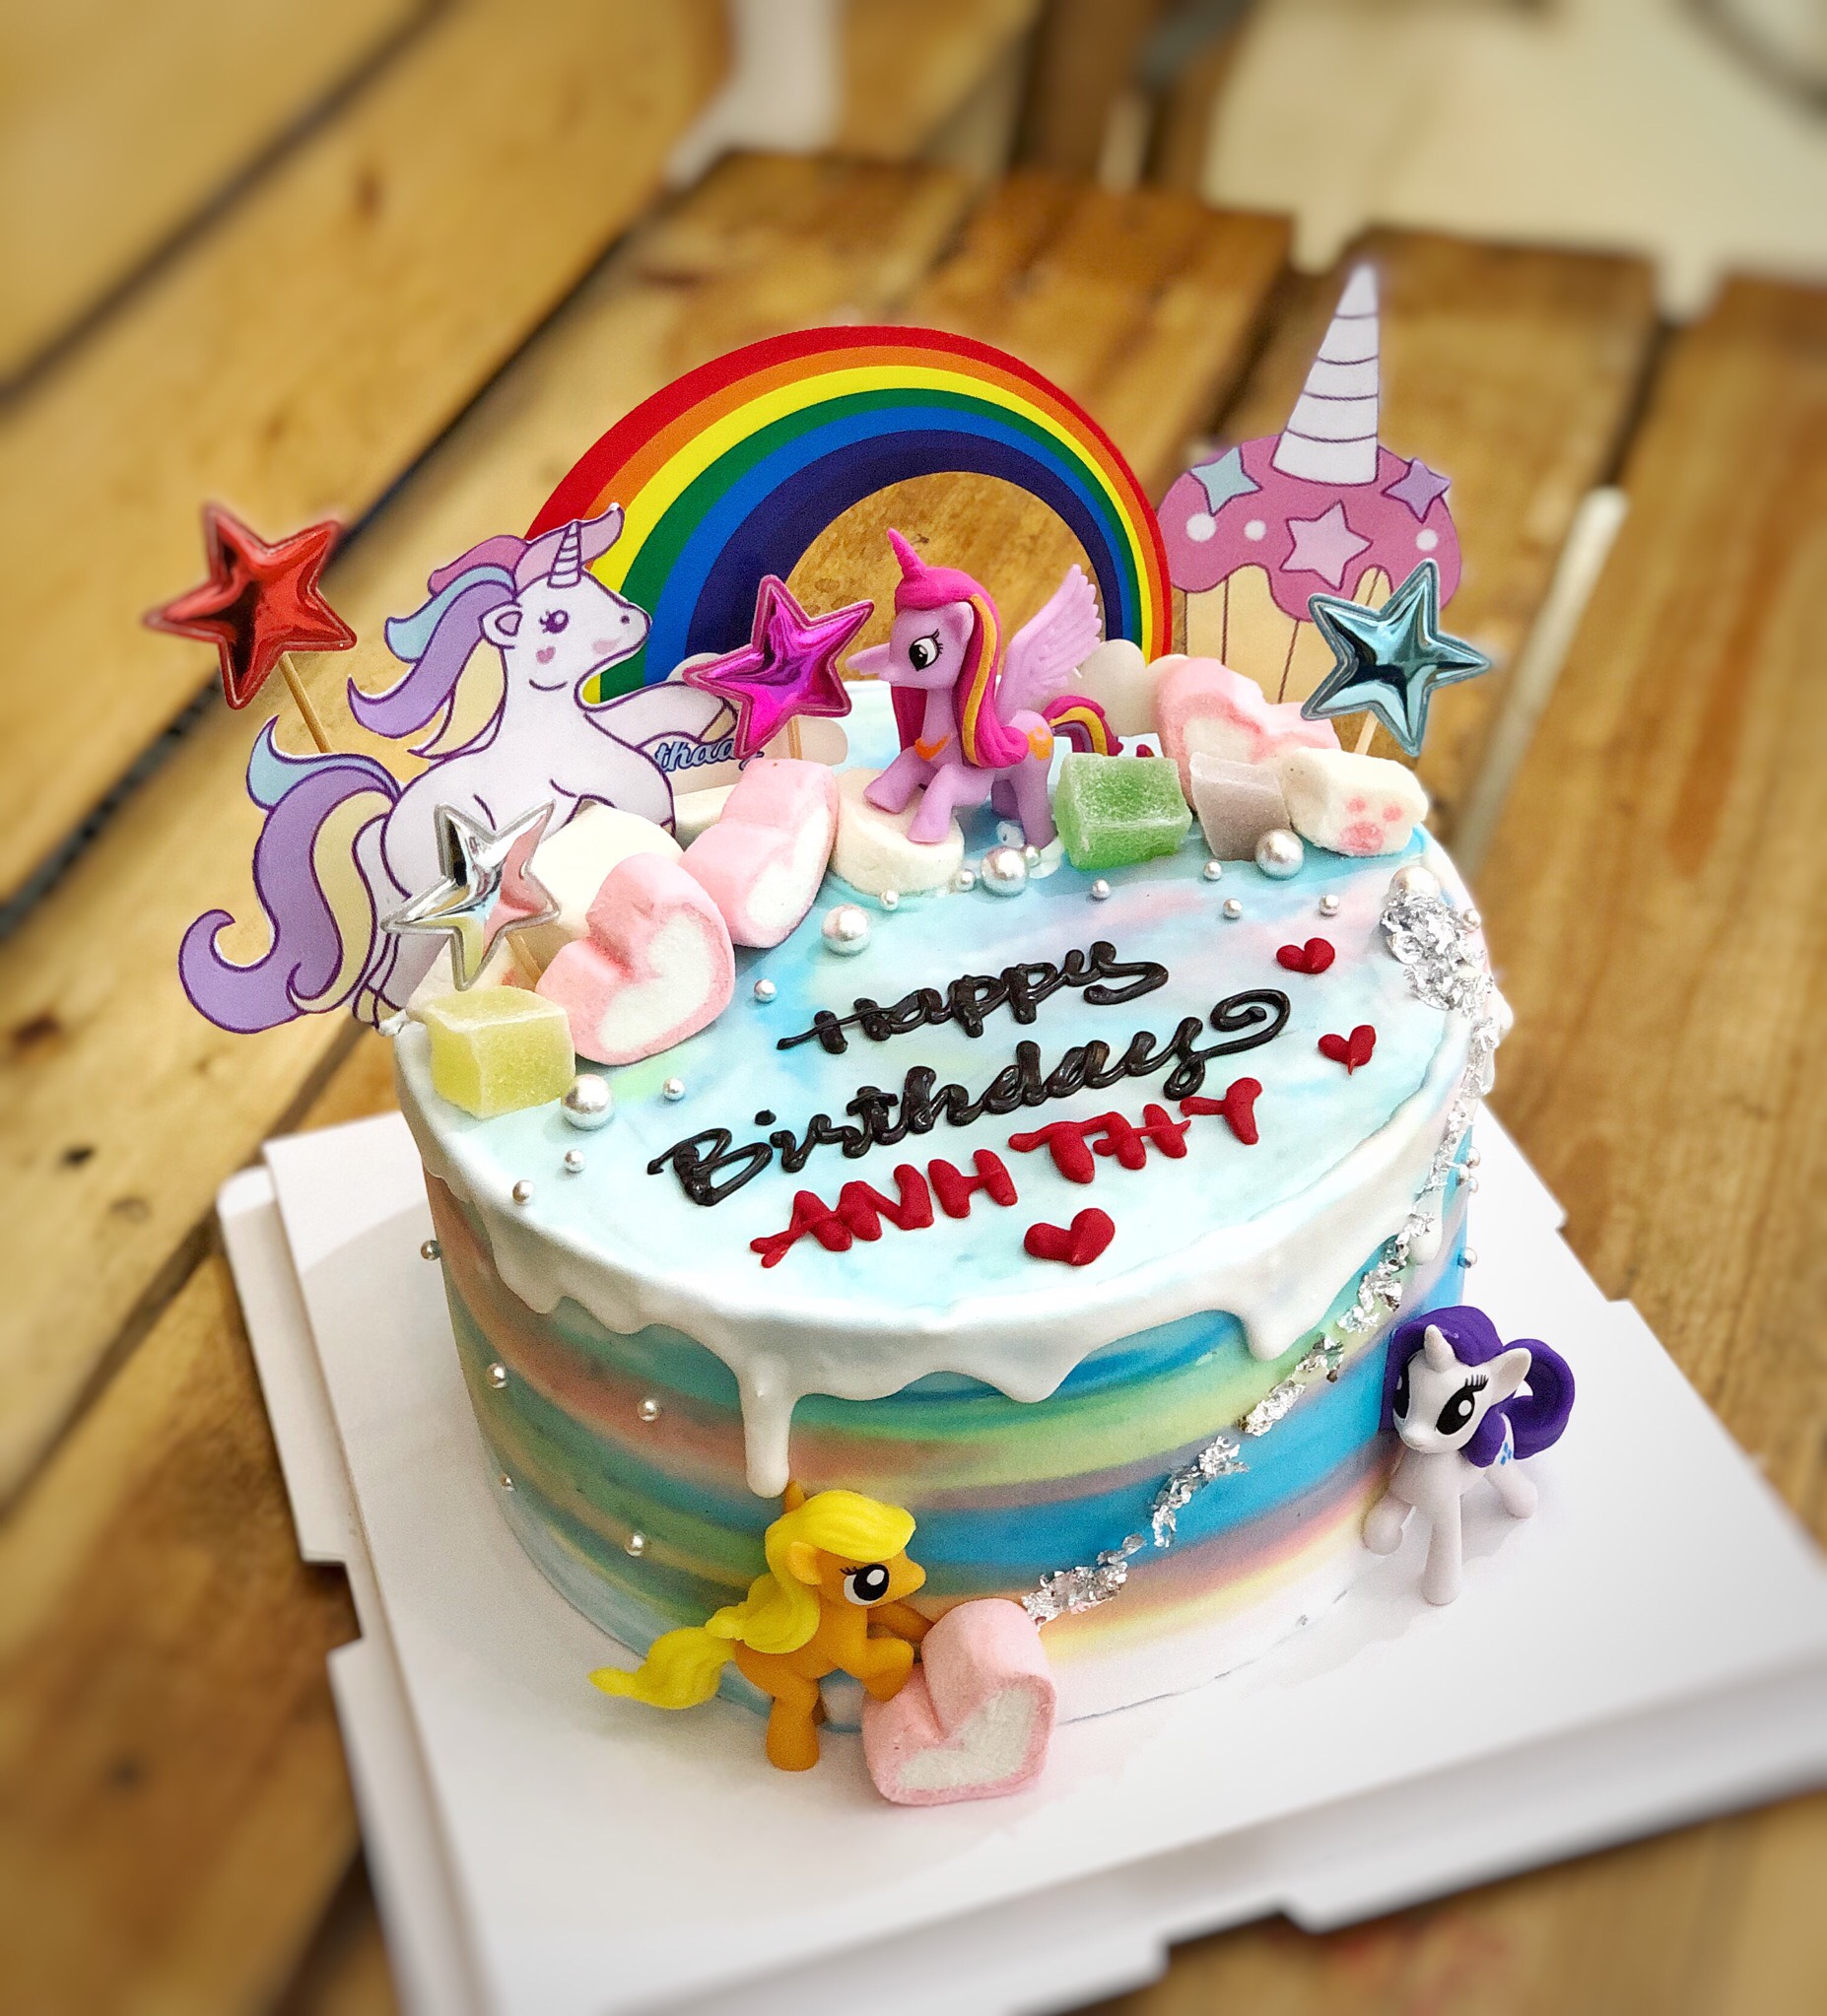 Bánh sinh nhật bé gái ngựa Pony  minbakery